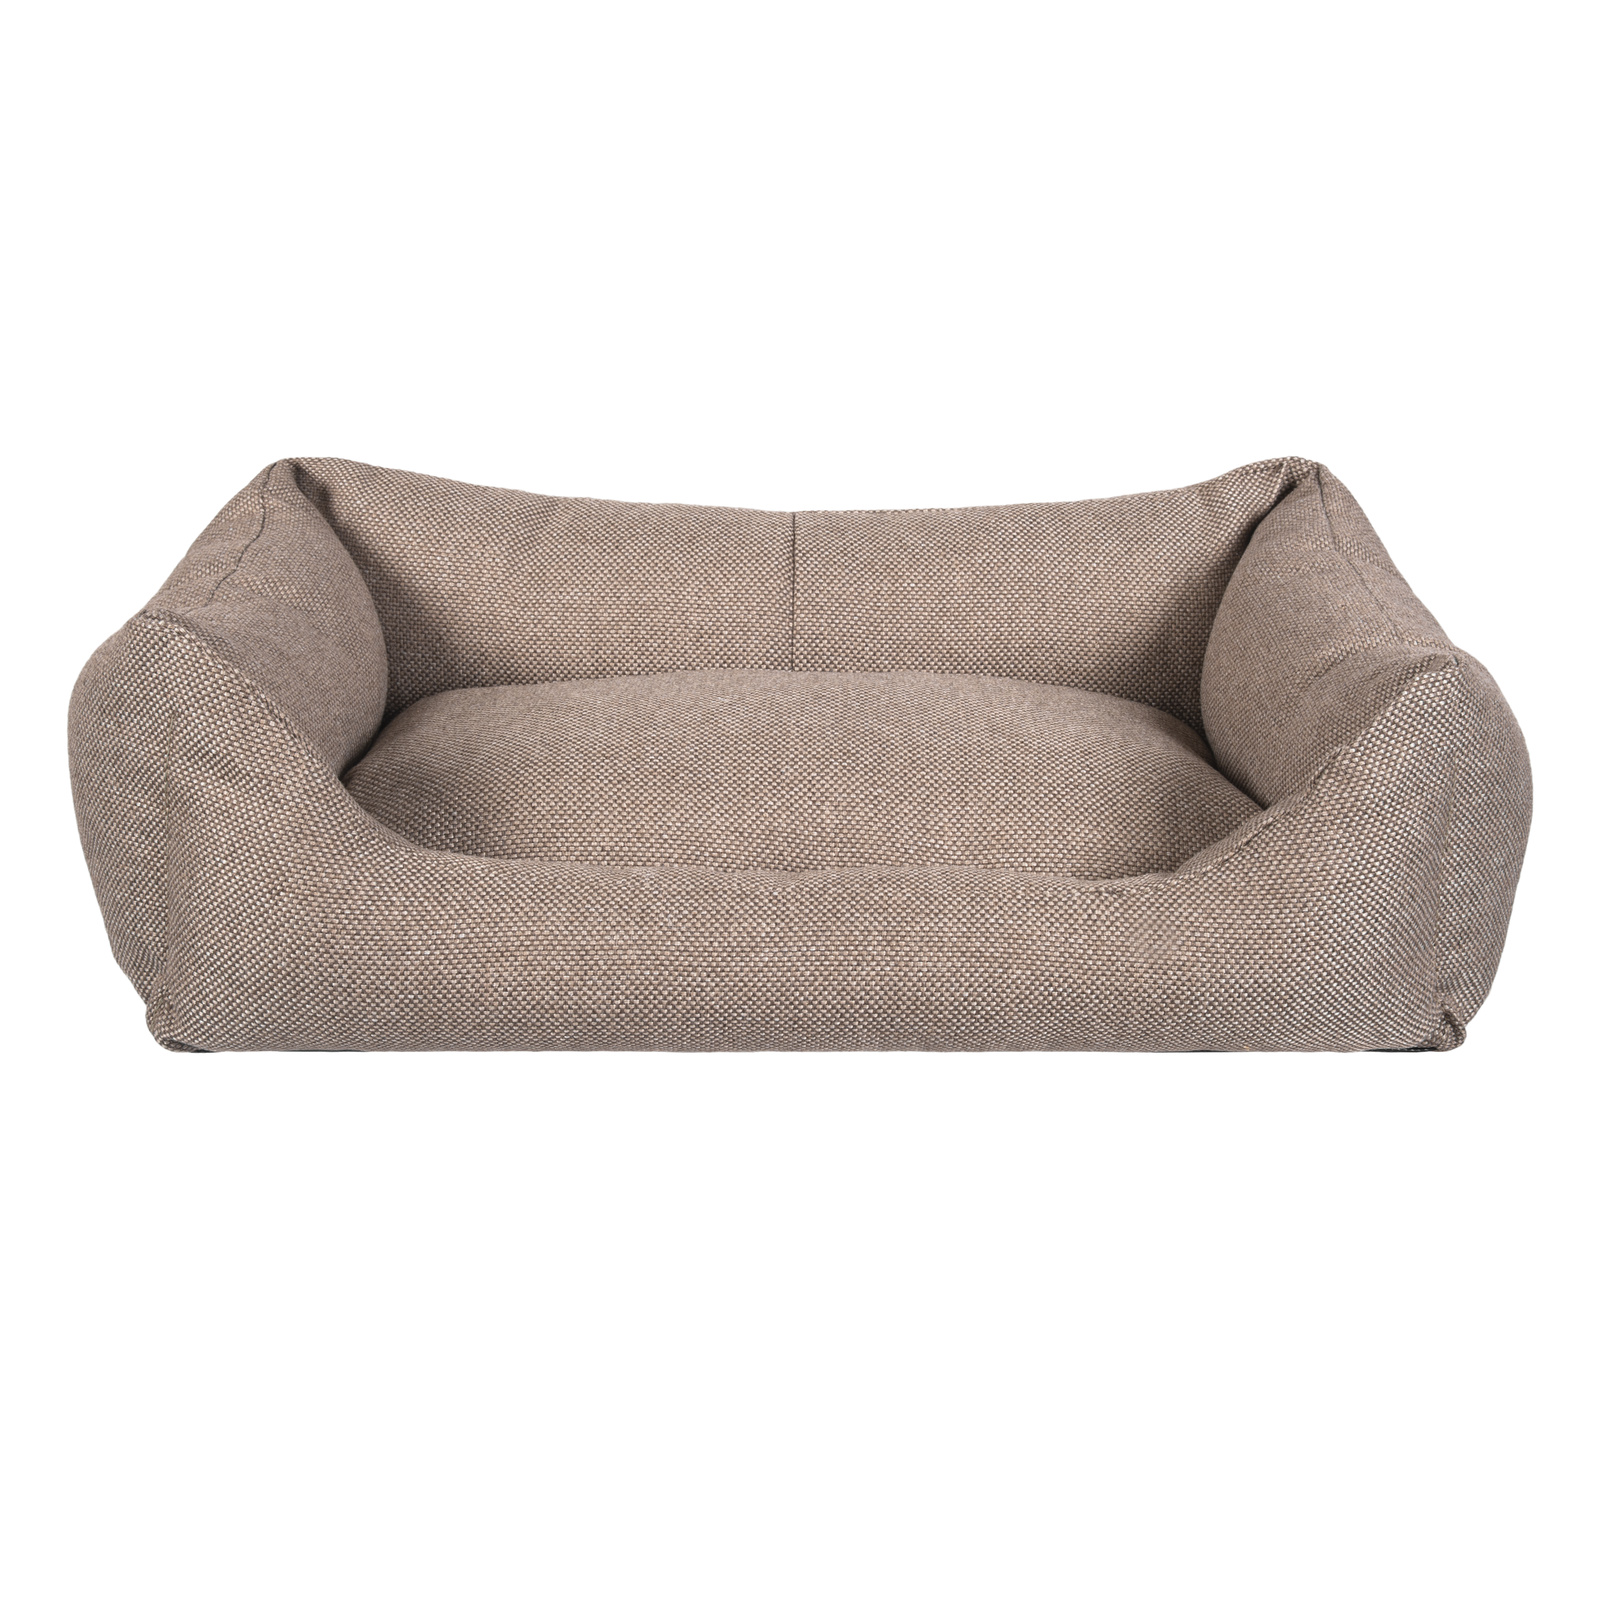 Лежанка для кошки, собаки Tappi, с подушкой, текстиль, бежевый, 33x45x15см